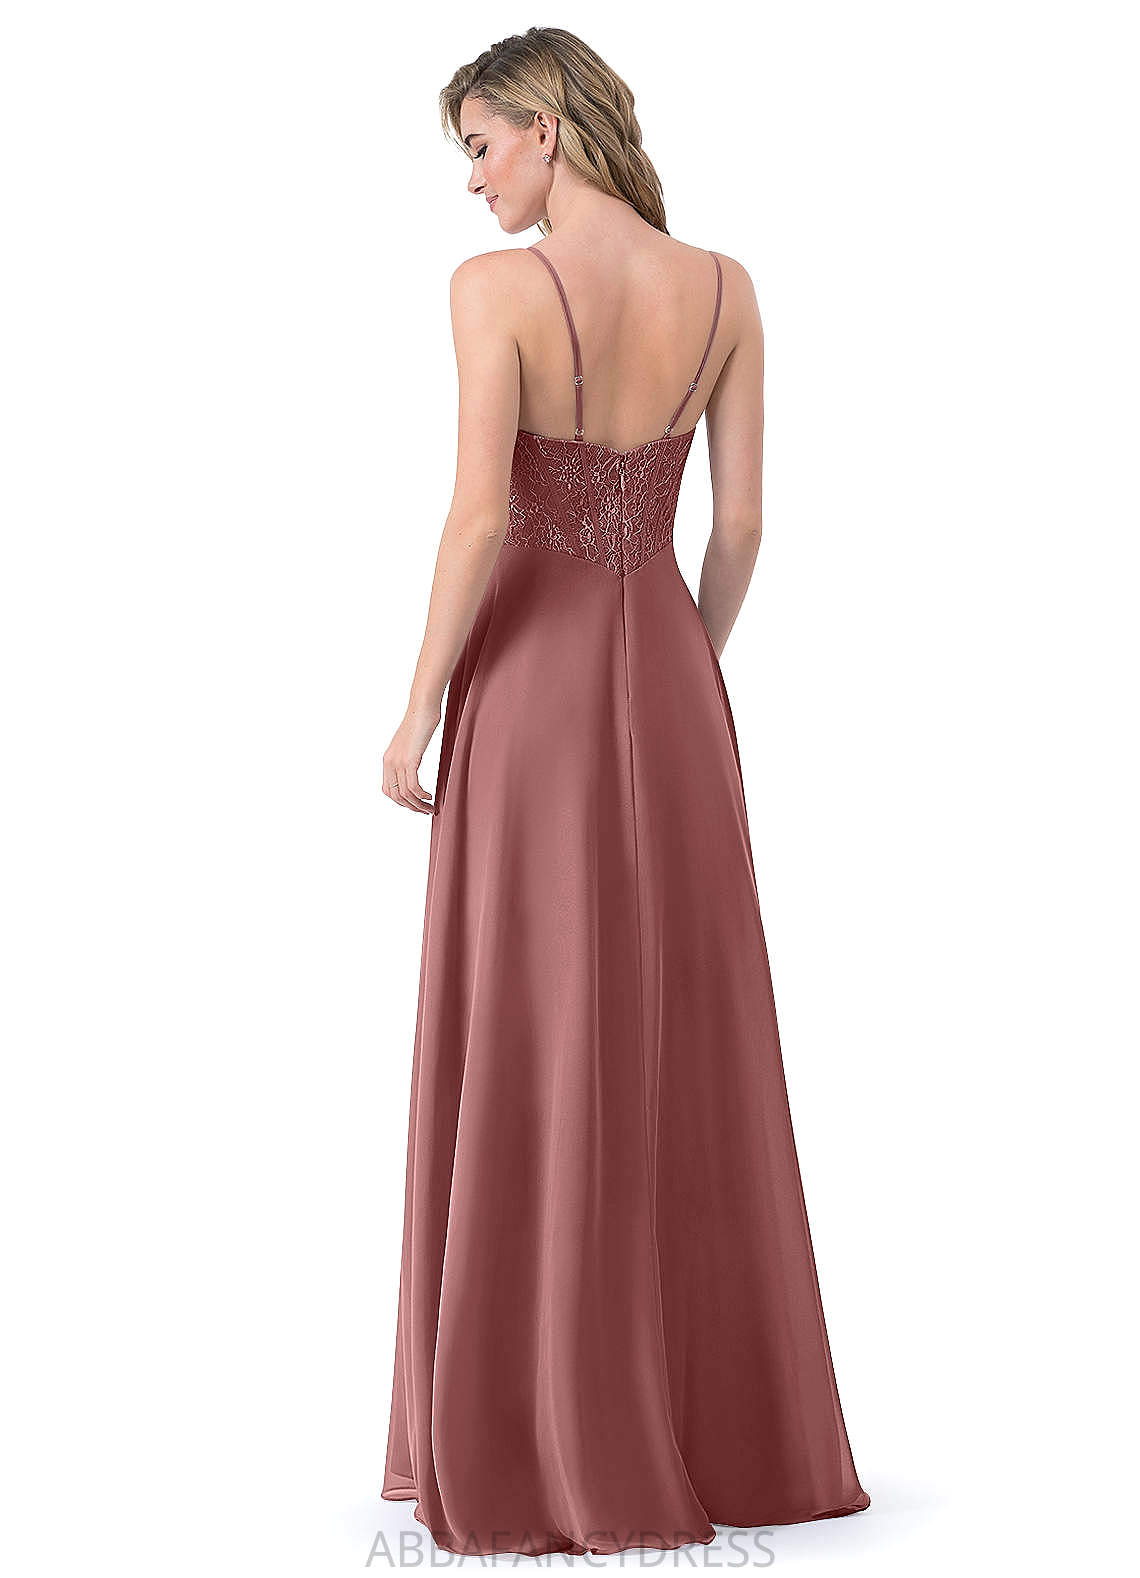 Kassandra Natural Waist Trumpet/Mermaid Spaghetti Staps Floor Length Sleeveless Bridesmaid Dresses